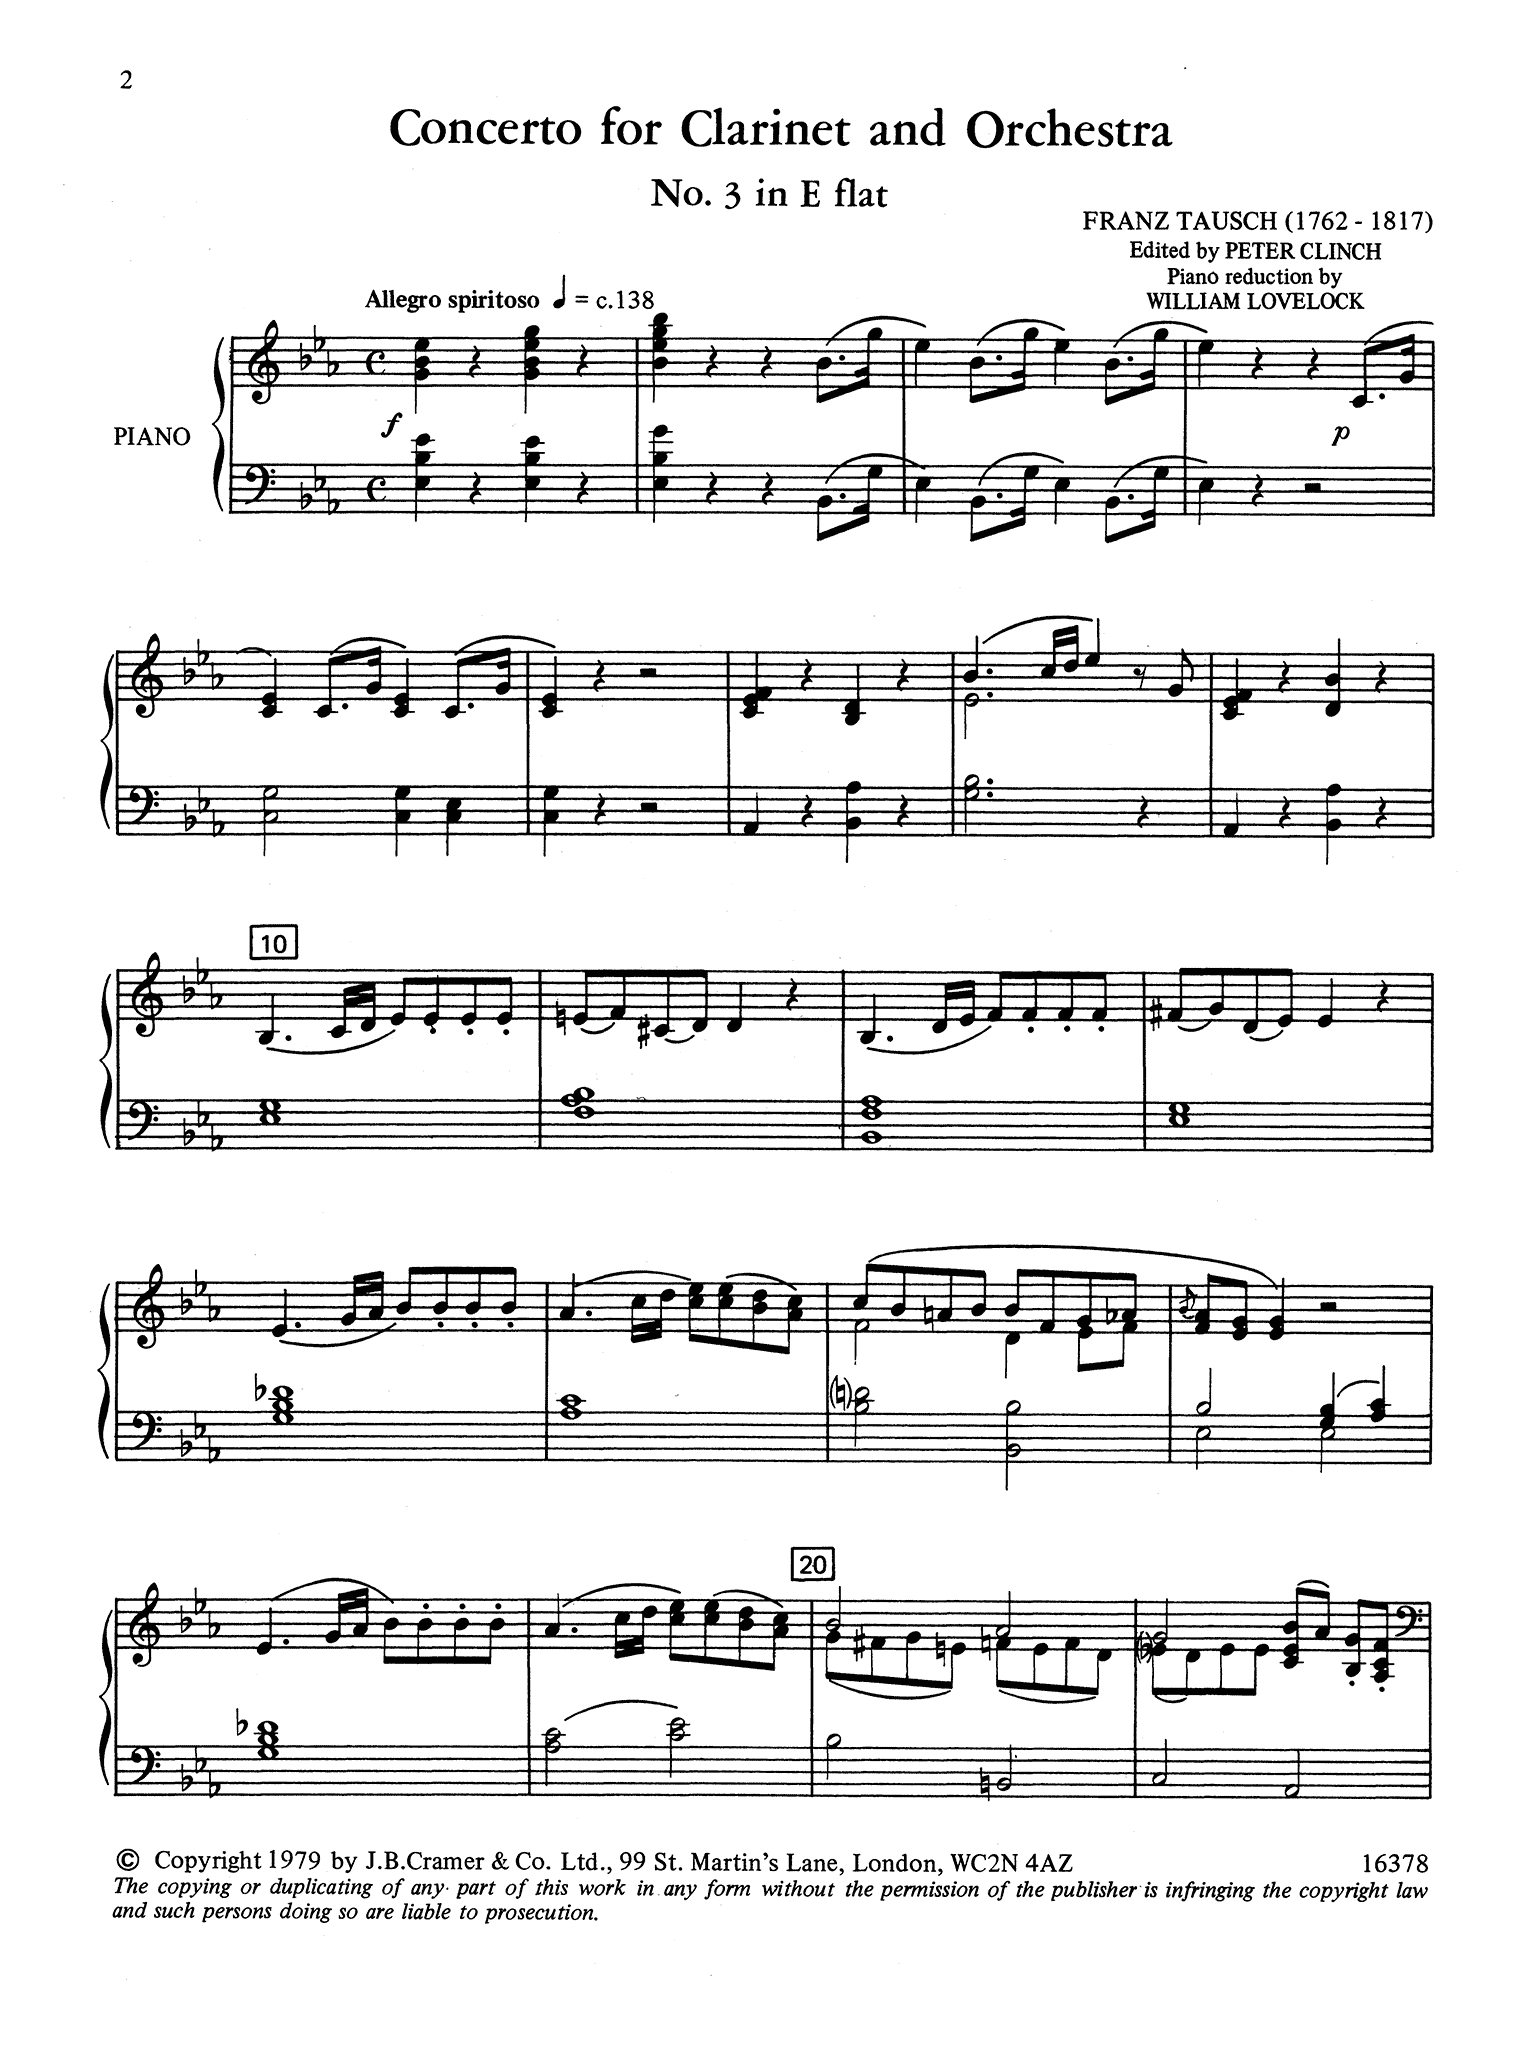 Clarinet Concerto No. 3 in E-Flat Major - Movement 1